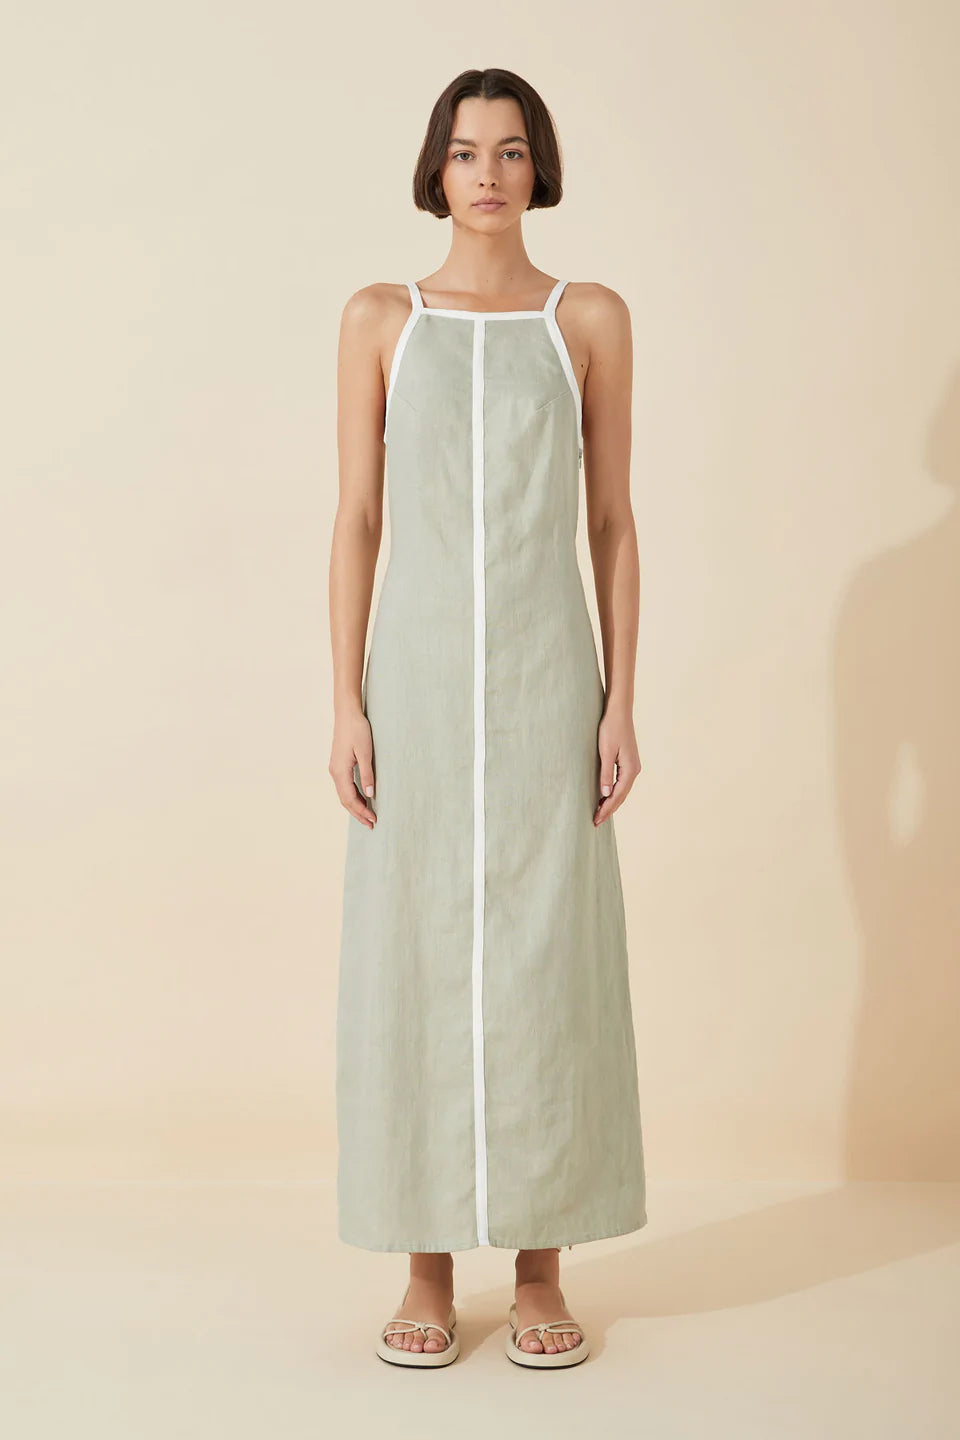 Moss Linen Contrast Bind Dress